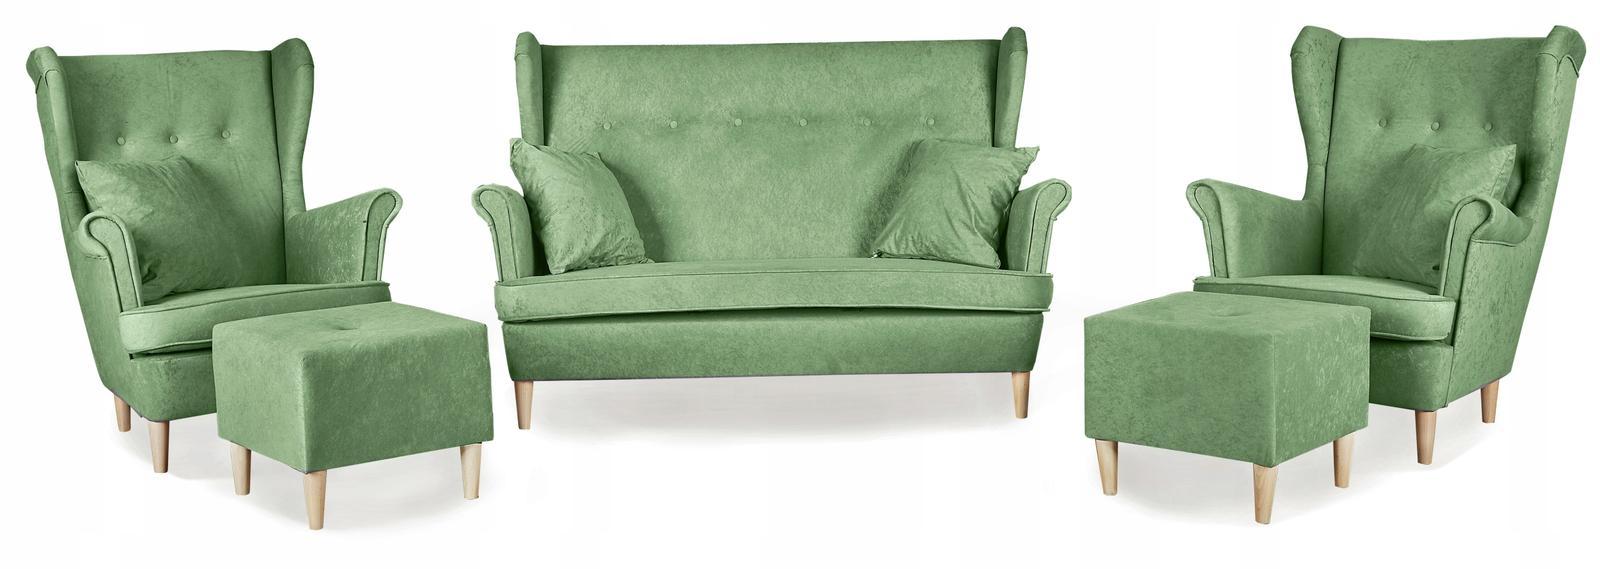 Zestaw wypoczynkowy mebli ARI 149x104x92 cm uszak sofa fotele pufy do salonu Mirofaza seledyn nr. 1